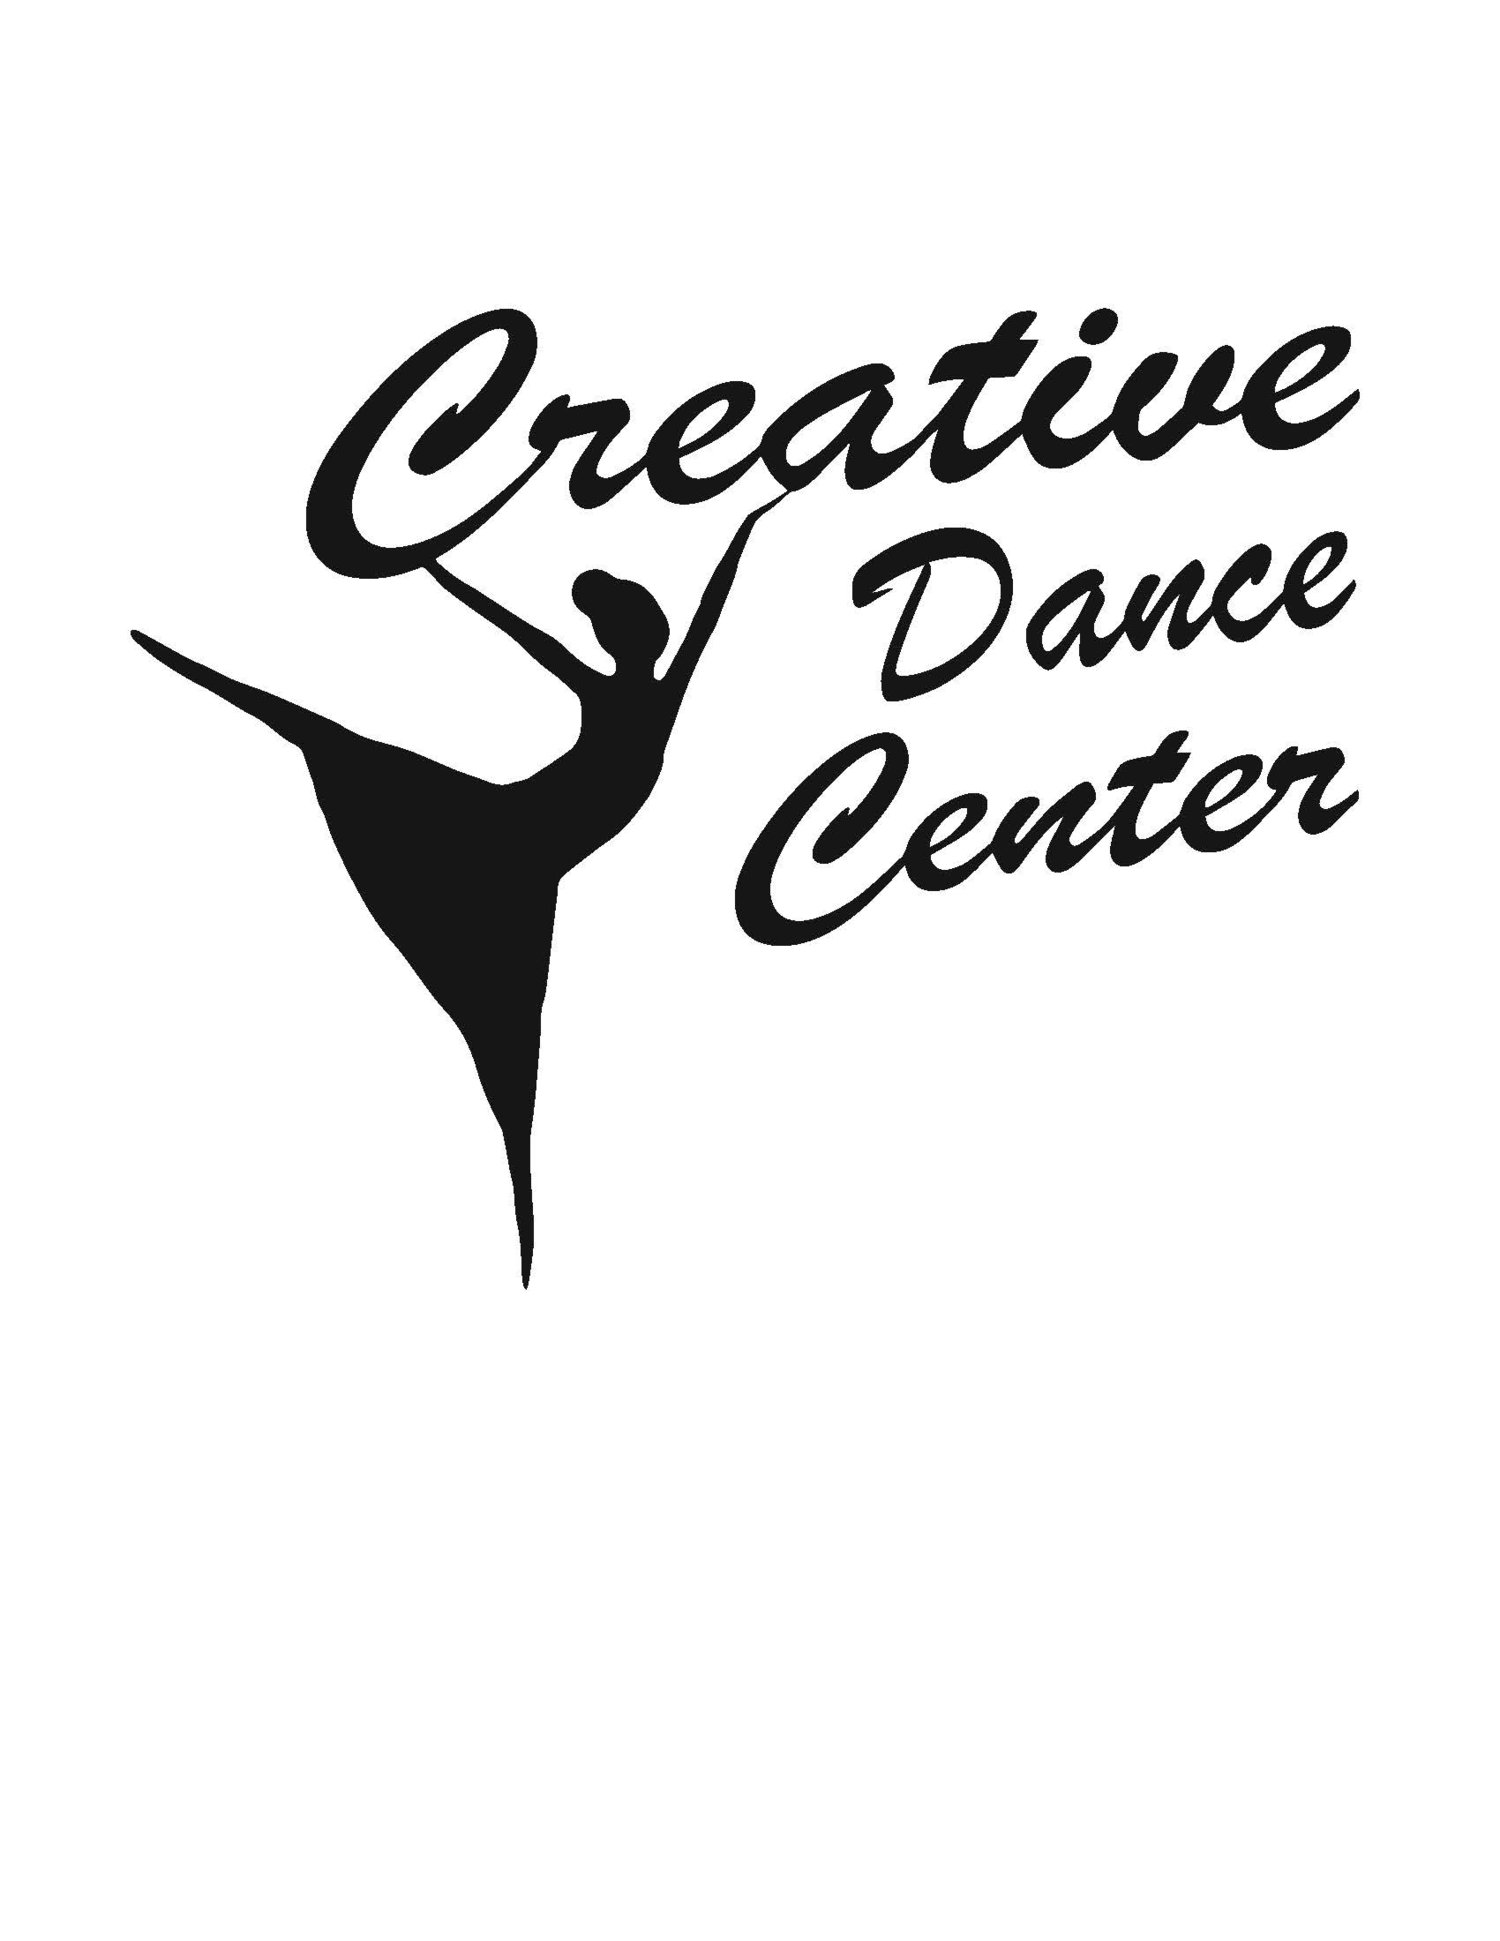 Creative Dance Center